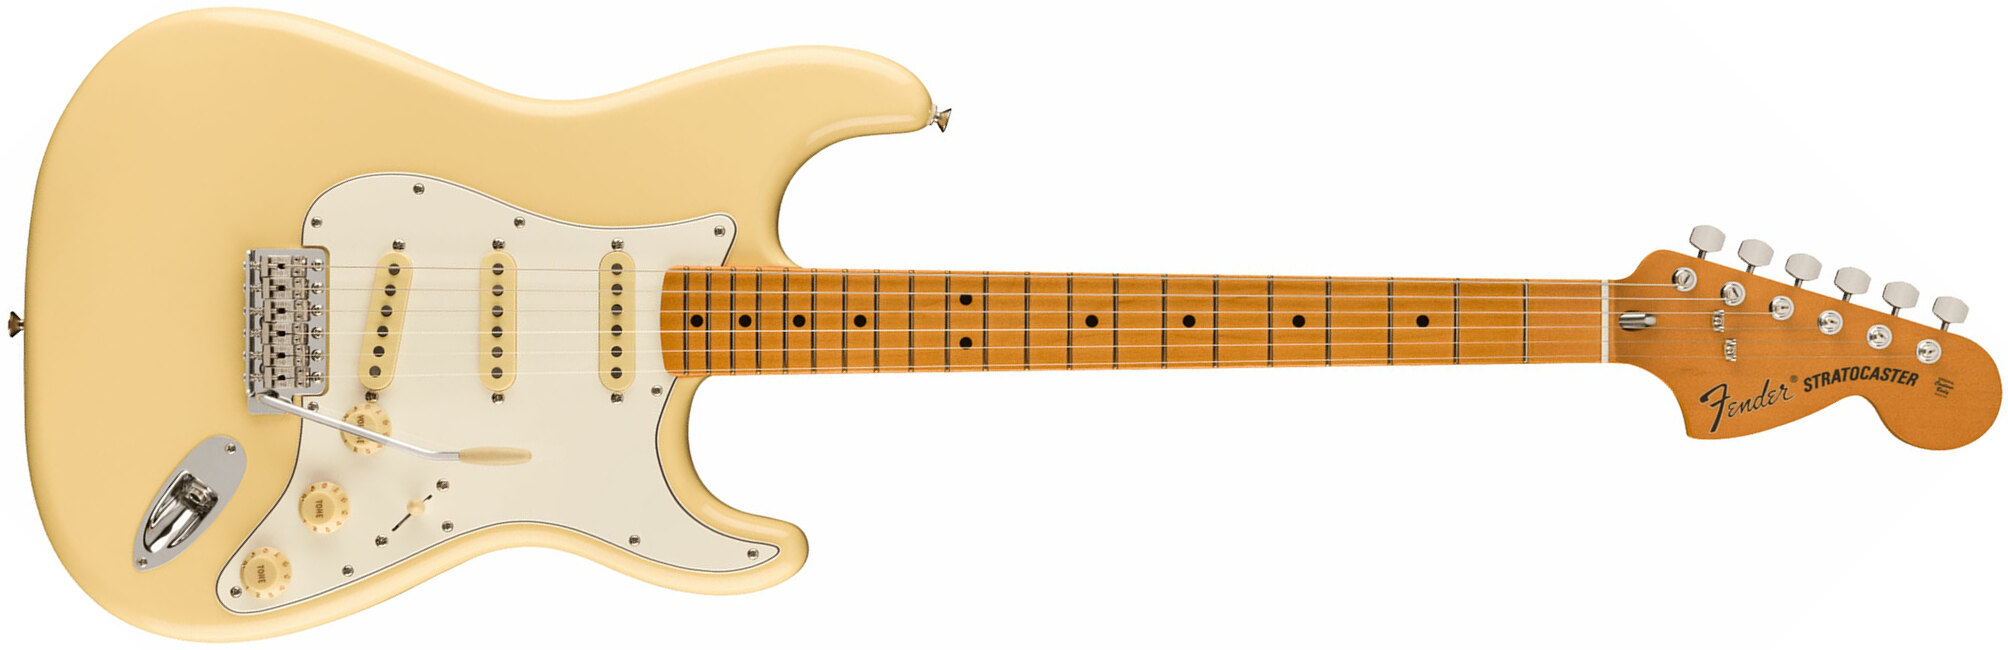 Fender Strat 70s Vintera 2 Mex 3s Trem Mn - Vintage White - Elektrische gitaar in Str-vorm - Main picture